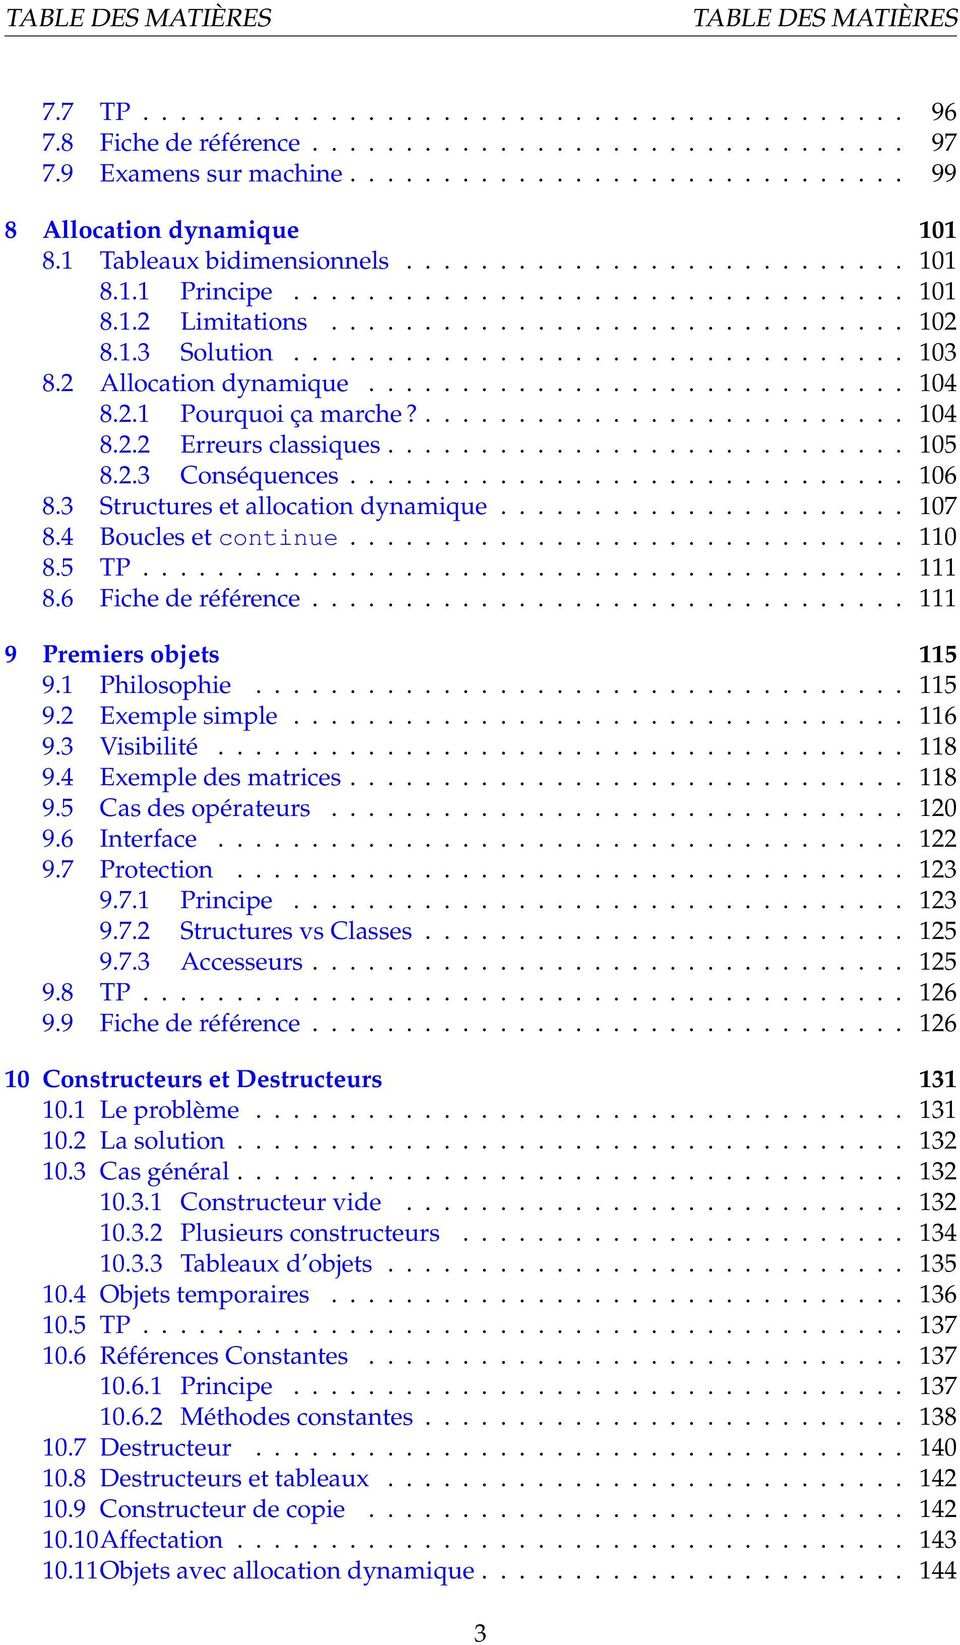 4 Boucles et continue 110 8.5 TP.. 111 8.6 Fiche de référence.. 111 9 Premiers objets 115 9.1 Philosophie.. 115 9.2 Exemple simple 116 9.3 Visibilité. 118 9.4 Exemple des matrices 118 9.